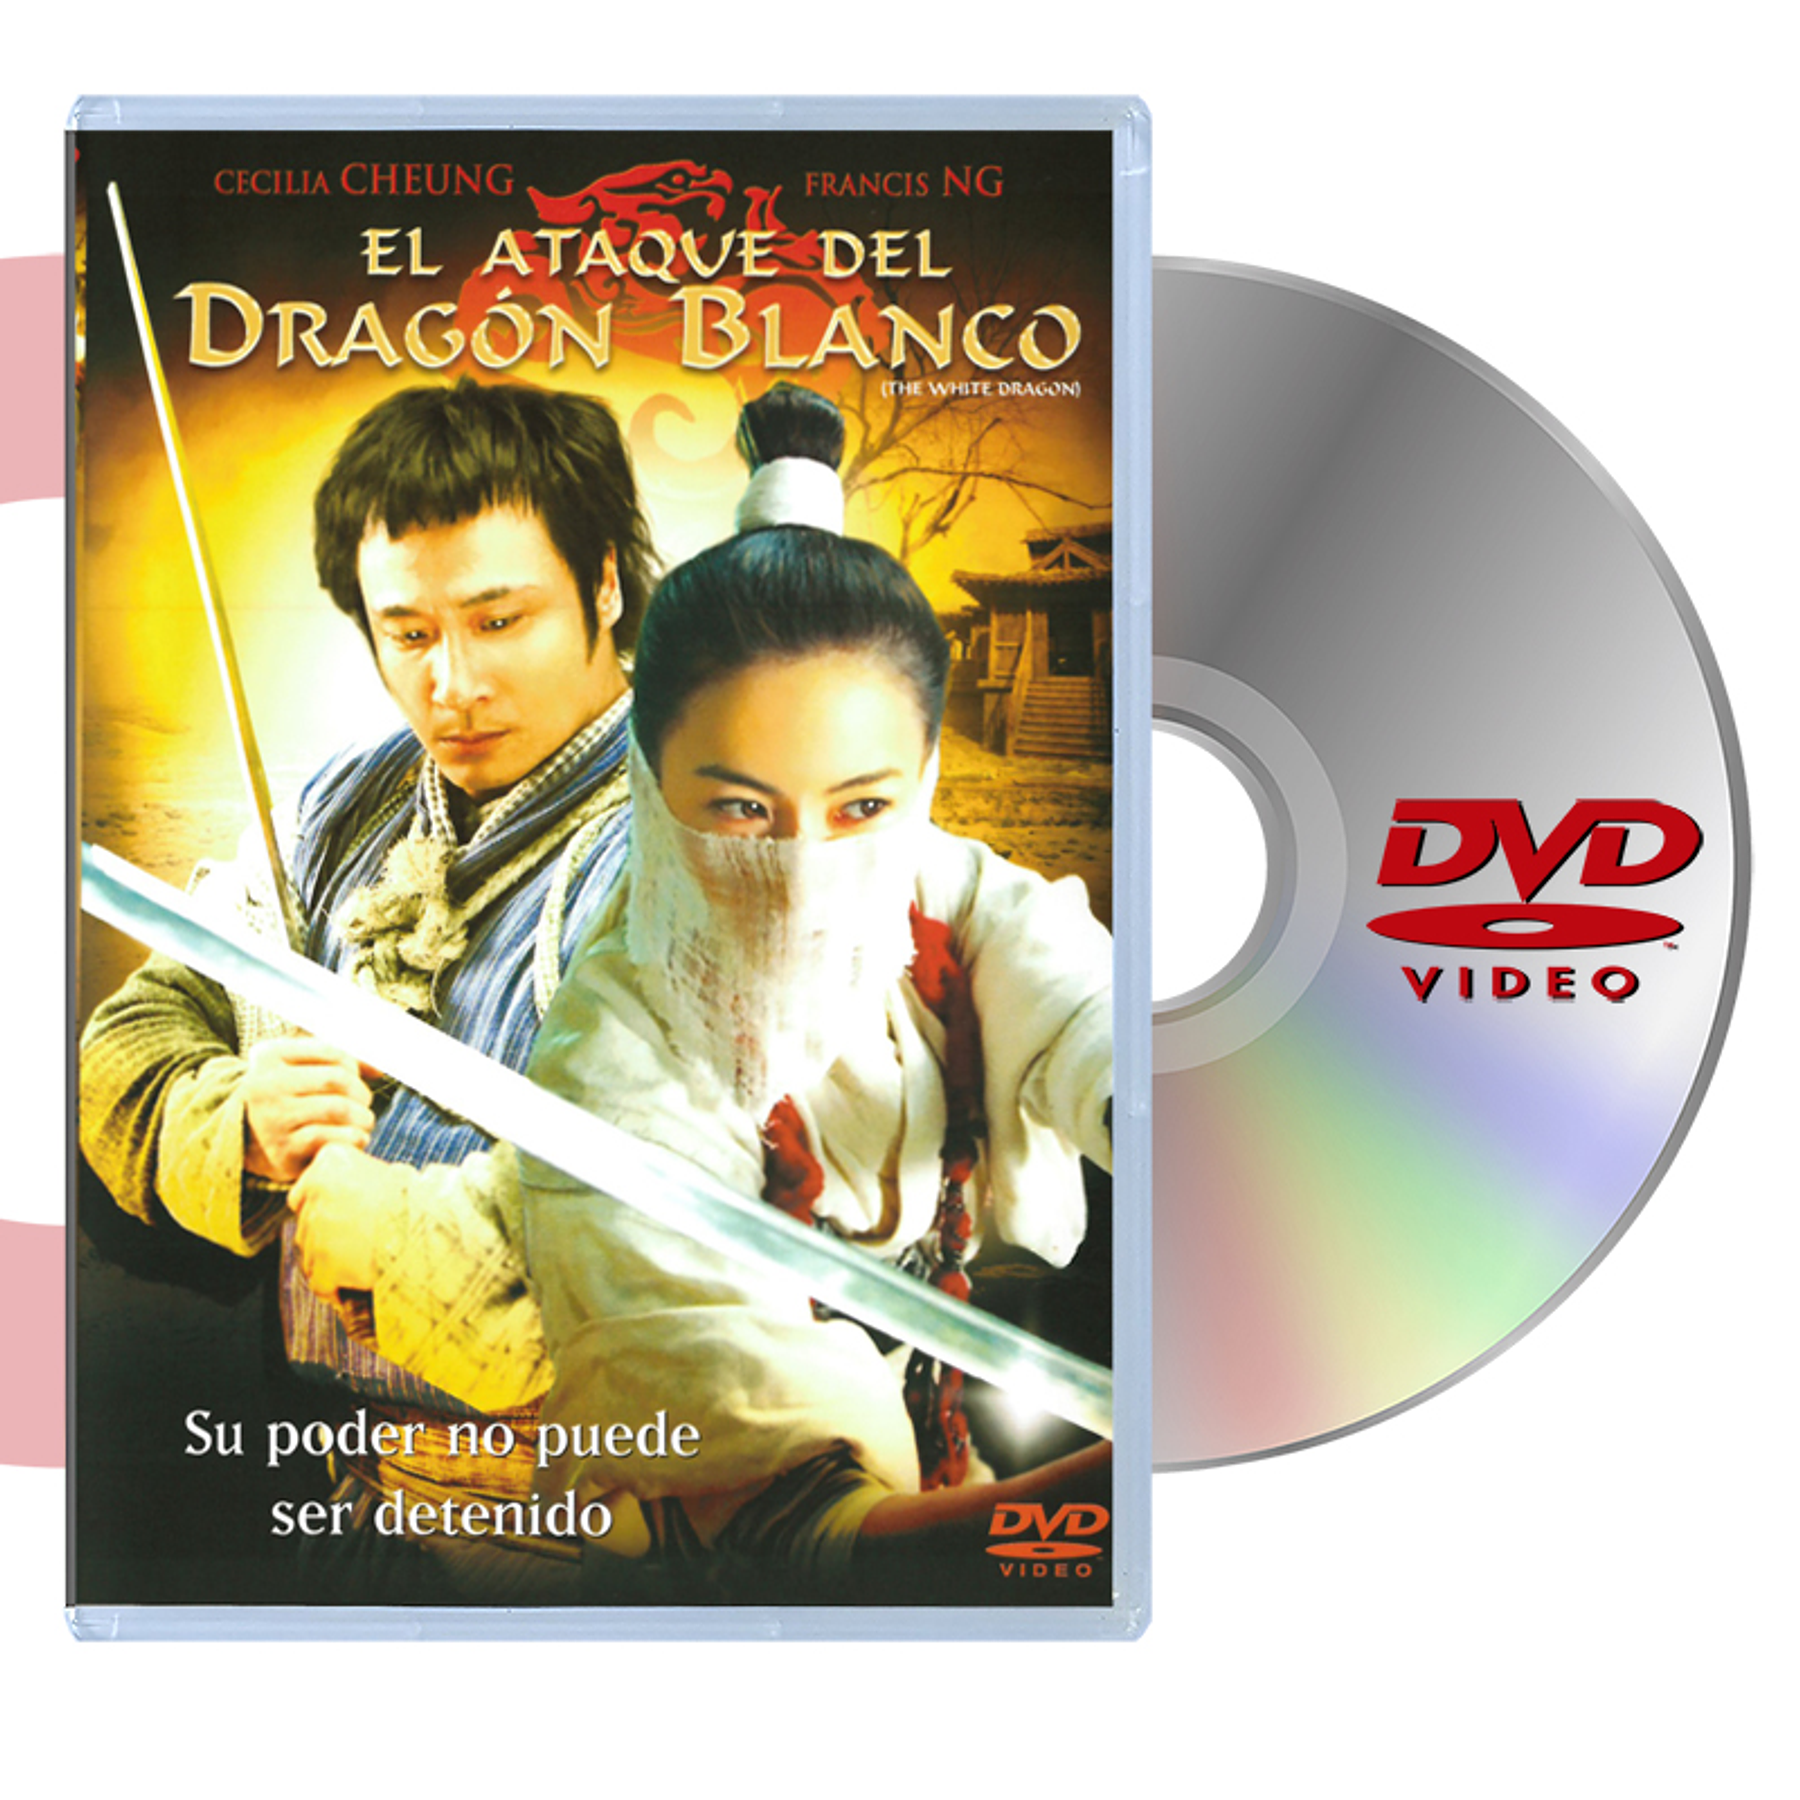 DVD EL ATAQUE DEL DRAGON BLANCO 